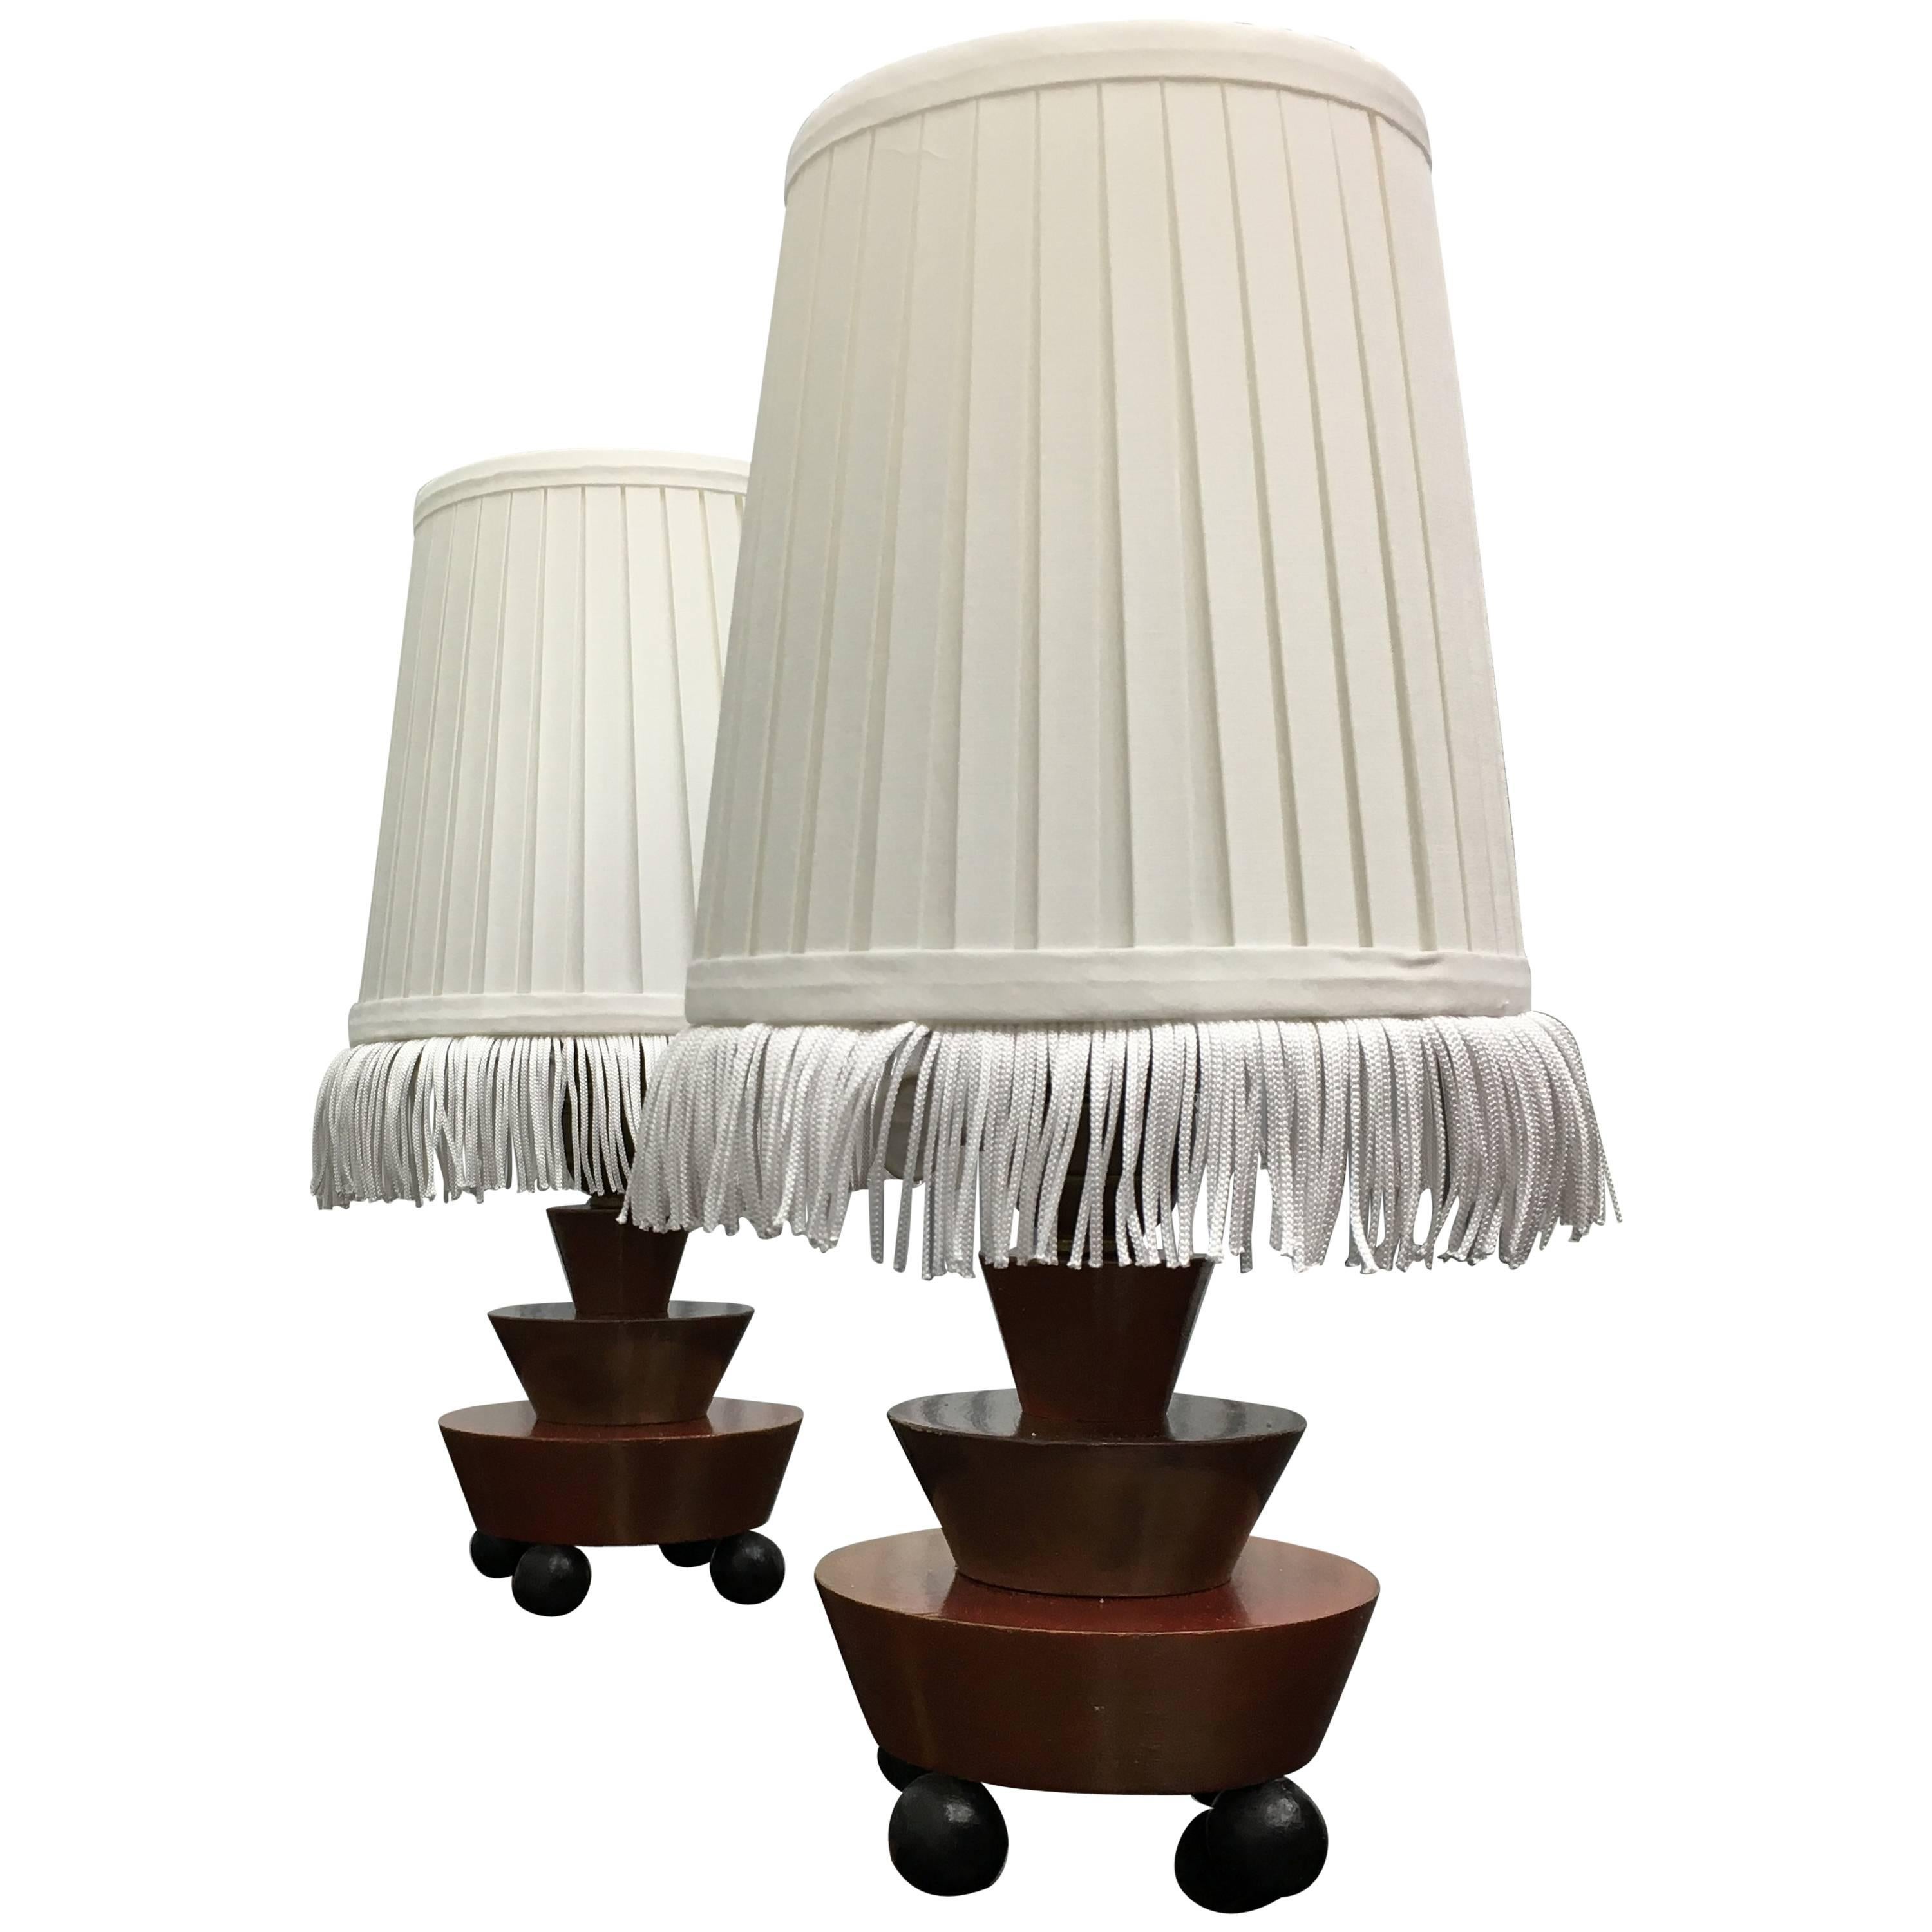 Pair of German Art Deco Table Lamps